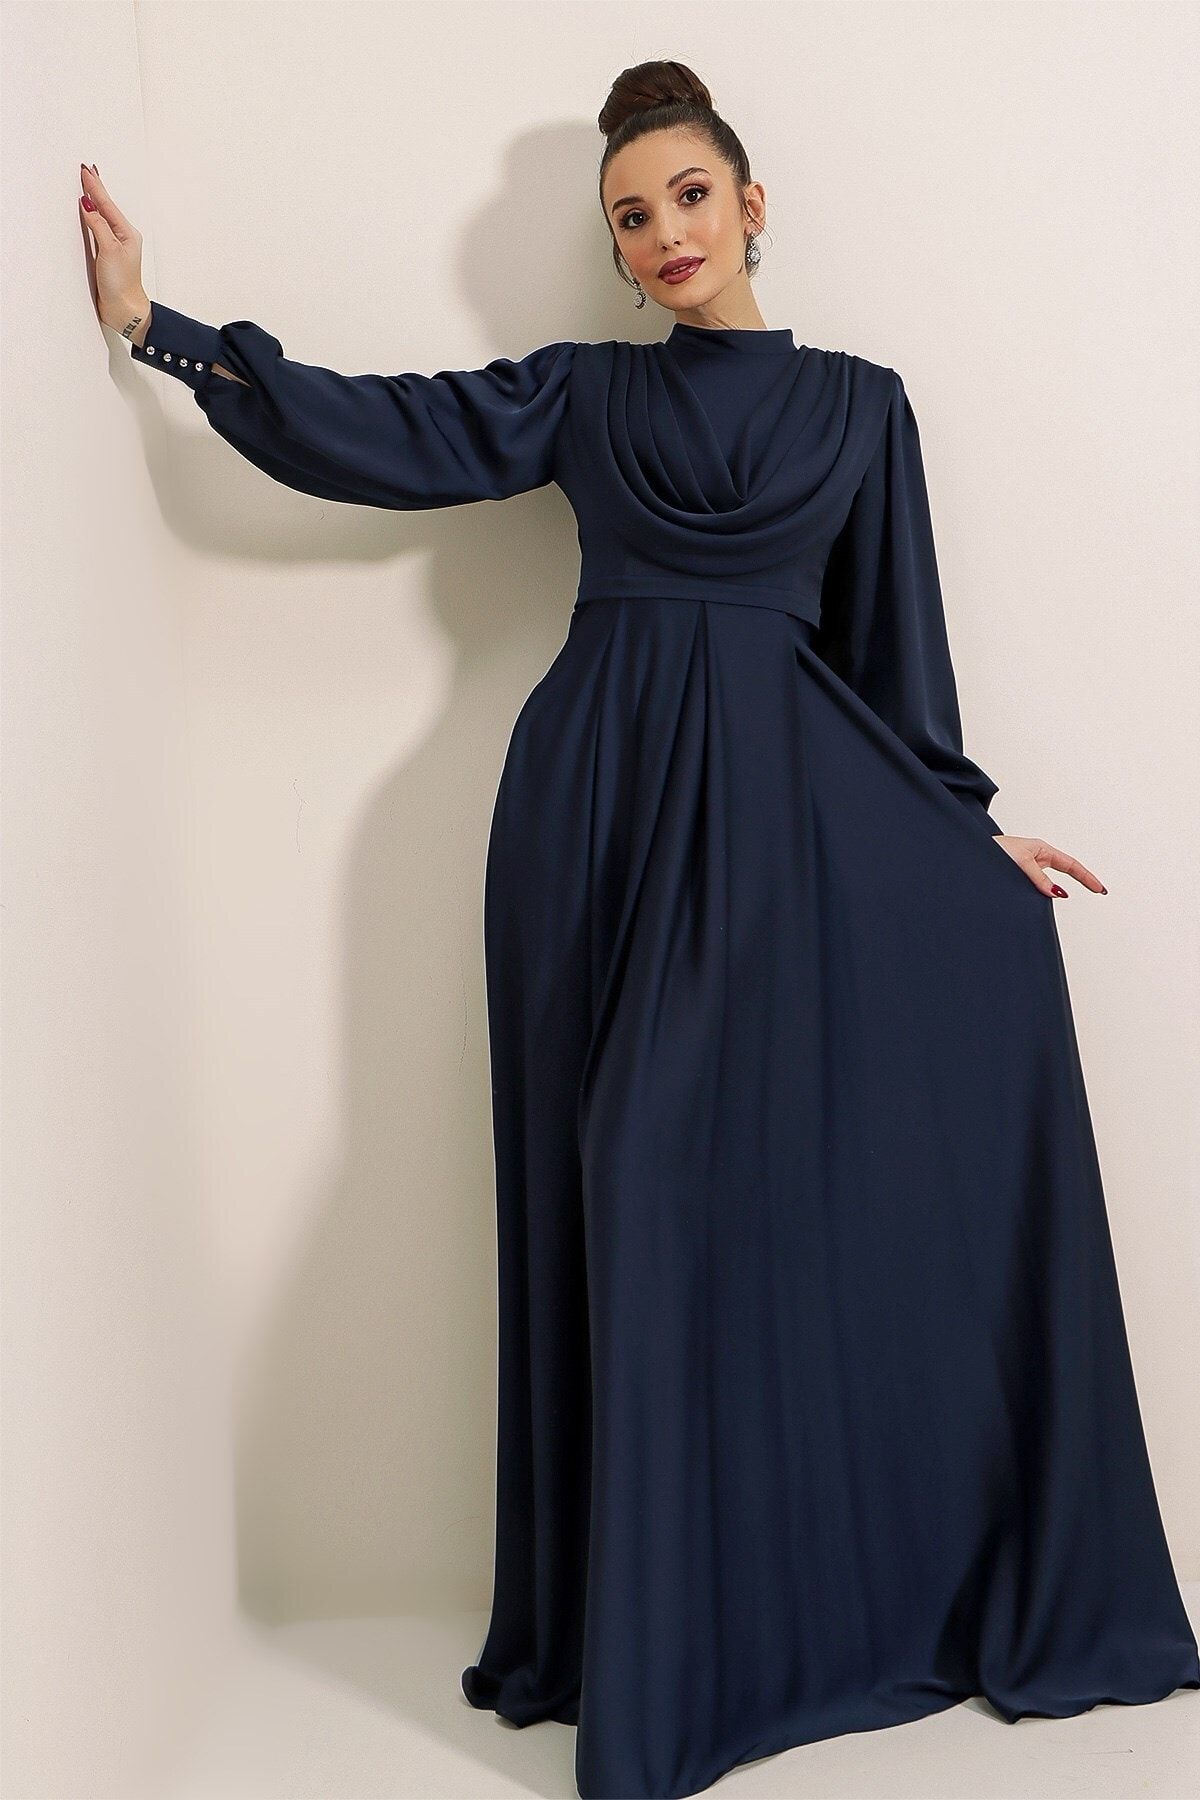 By Saygı Önü Dökümlü Kolları Düğme Detaylı Astarlı Uzun Saten Elbise Lacivert